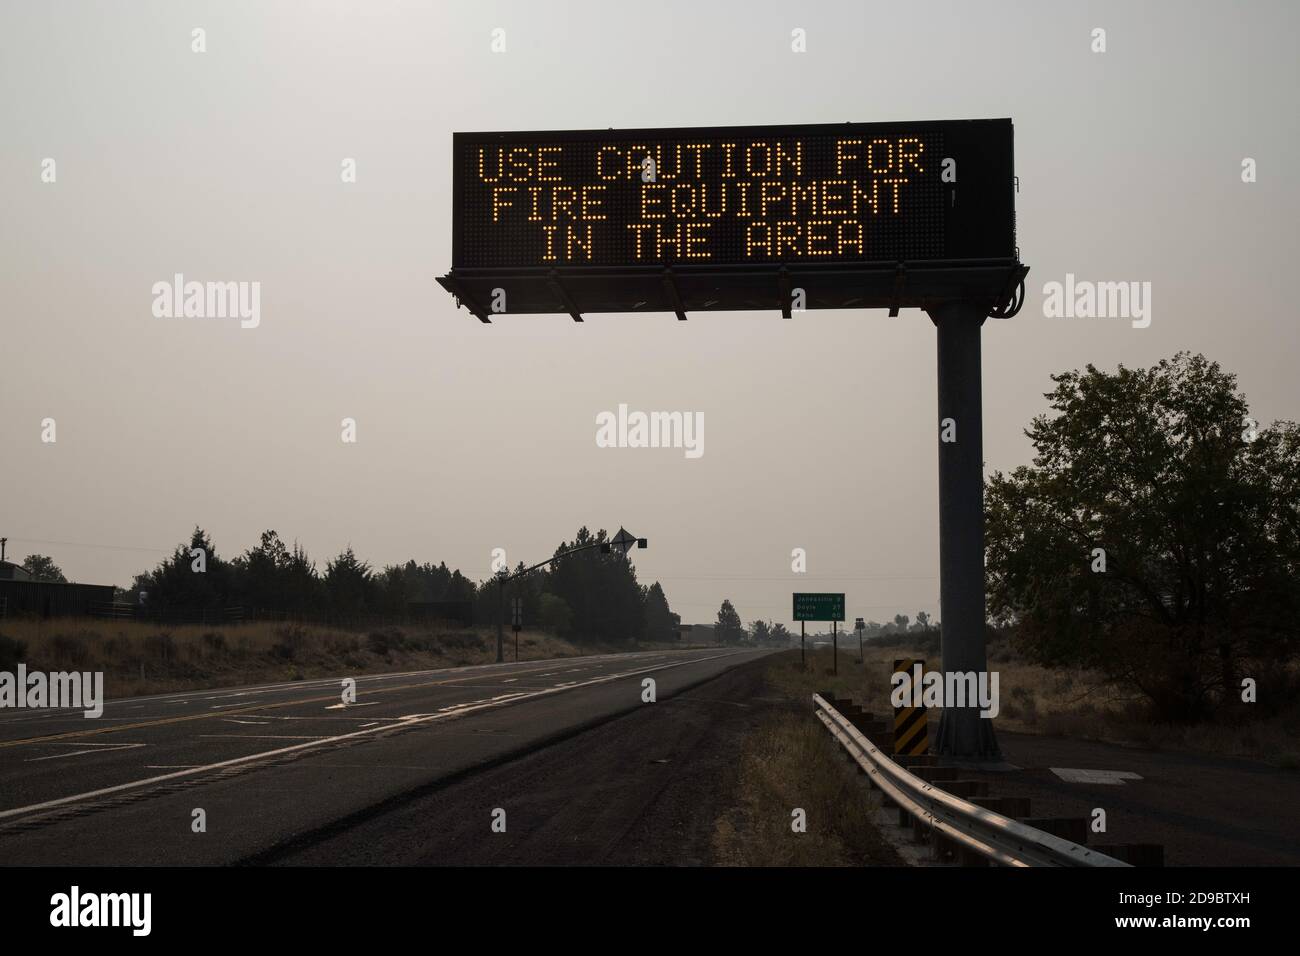 SUSANVILLE CALIFORNIA - 13 SEPTEMBRE 2020 - LE panneau d'information CALTRANS au-dessus de l'US Highway 395 avertit les conducteurs de surveiller les véhicules d'incendie comme l'air aroun Banque D'Images